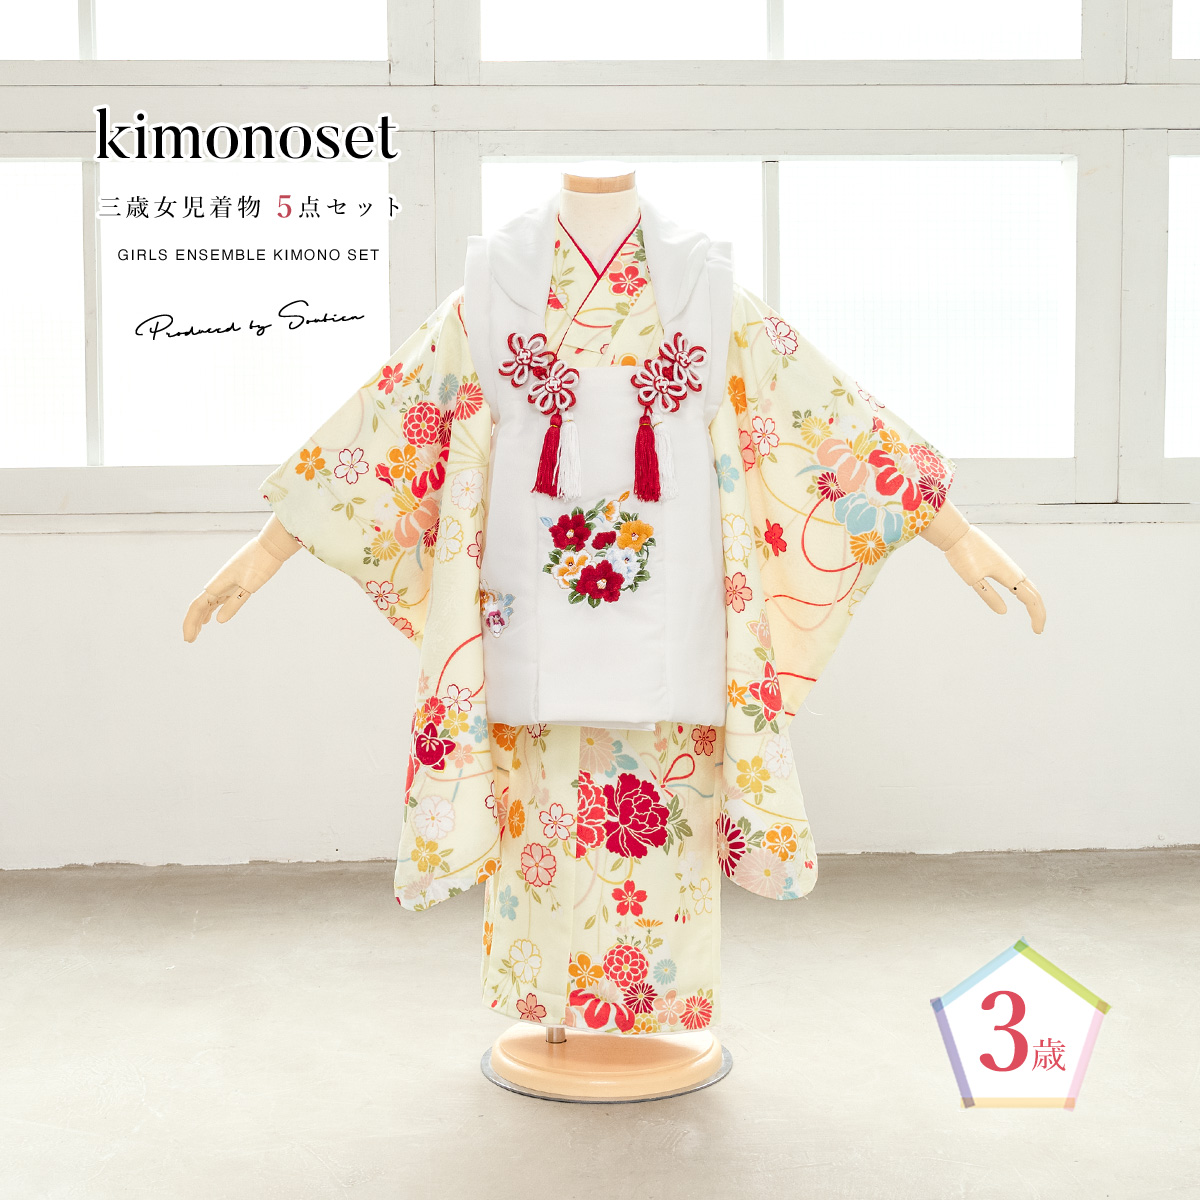  "Семь, пять, три" кимоно 3 лет распродажа девочка три лет кимоно комплект . ткань комплект белый желтый цвет ... вышивка кимоно hifu кимоно японская одежда японский костюм женщина . ребенок бесплатная доставка 